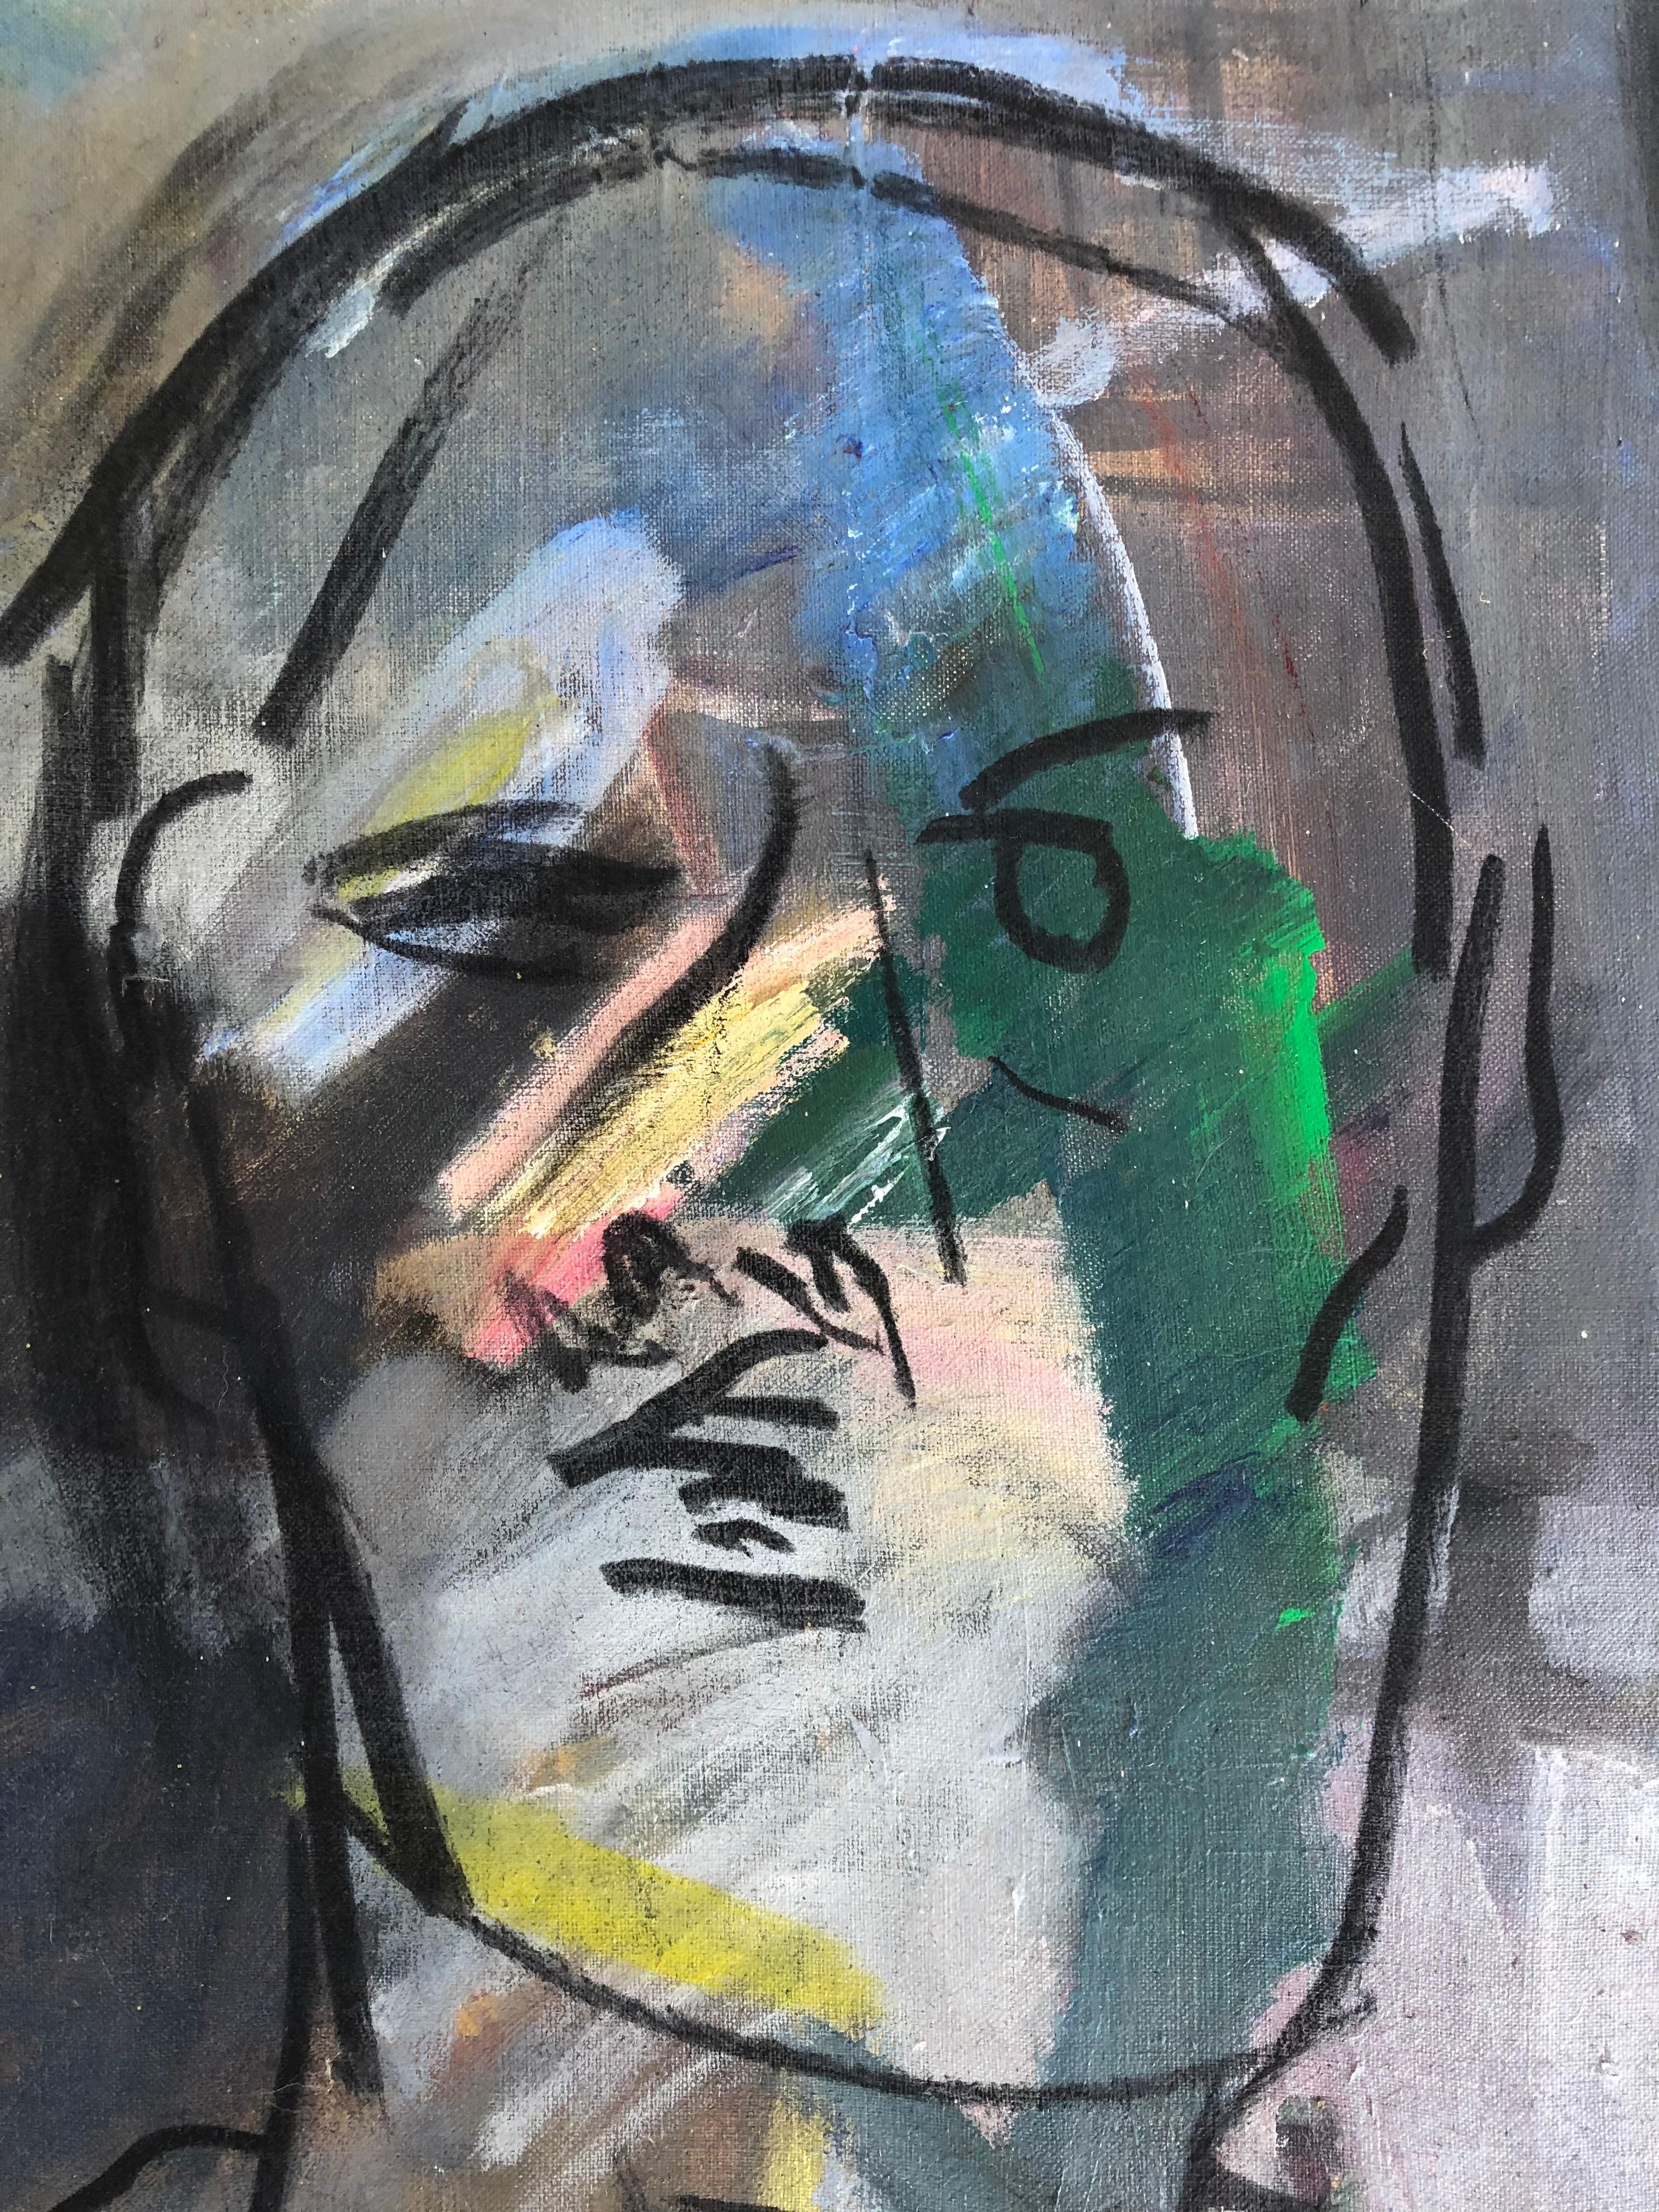 Vintage Warren Fischer peinture abstraite figurative sur toile

Nous proposons à la vente une peinture abstraite figurative sur toile de l'artiste américain Warren Fischer (1943-2001). Le tableau fait partie de la succession de l'artiste. Fischer